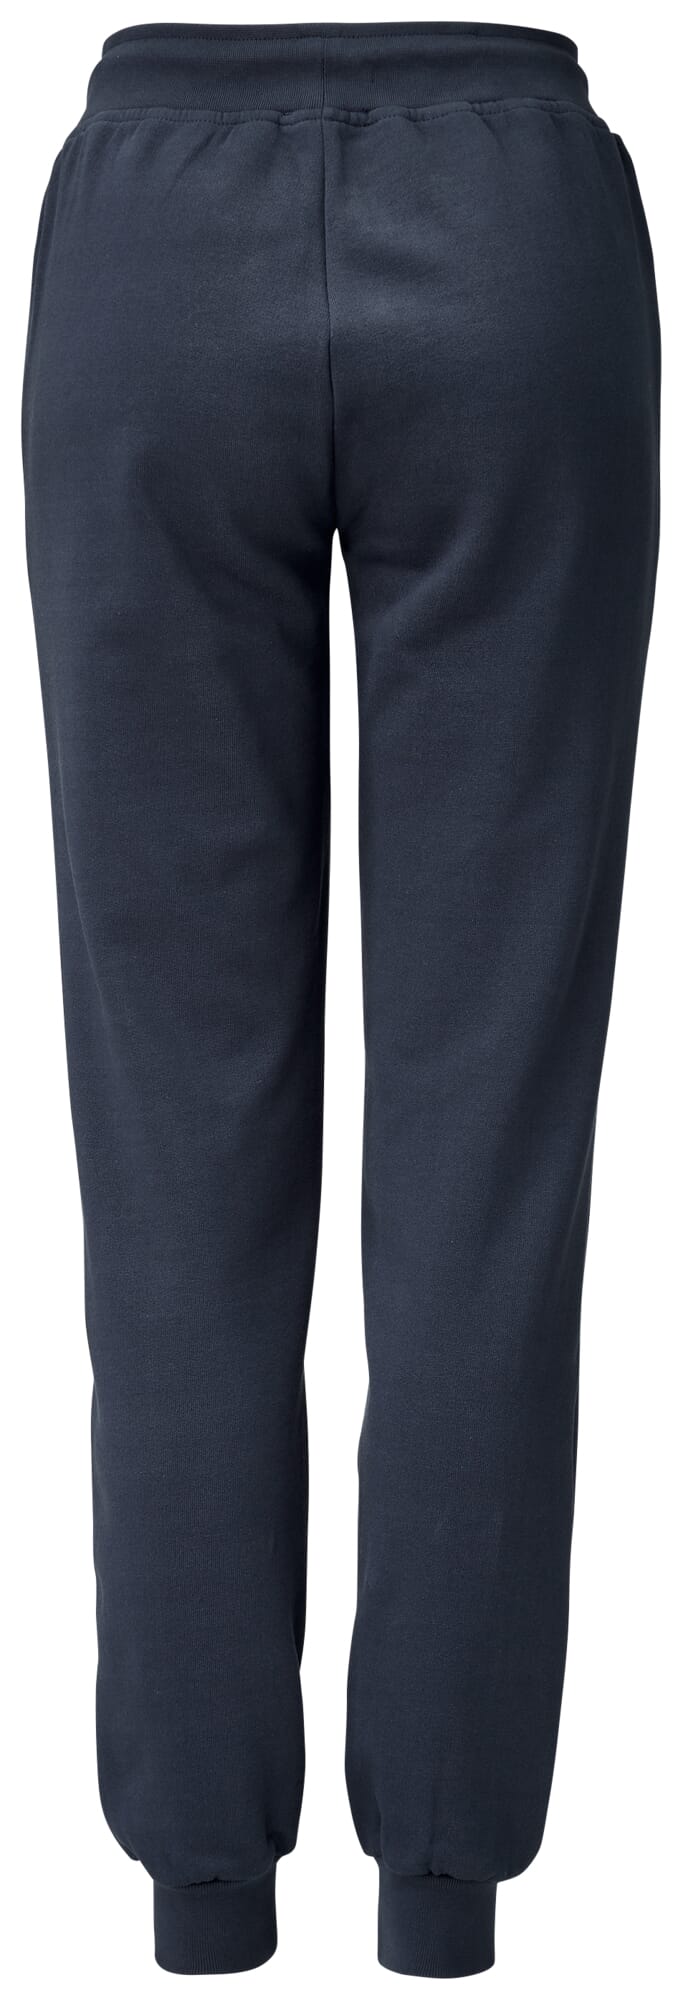 Dark sweatpants, blue Ladies | Manufactum